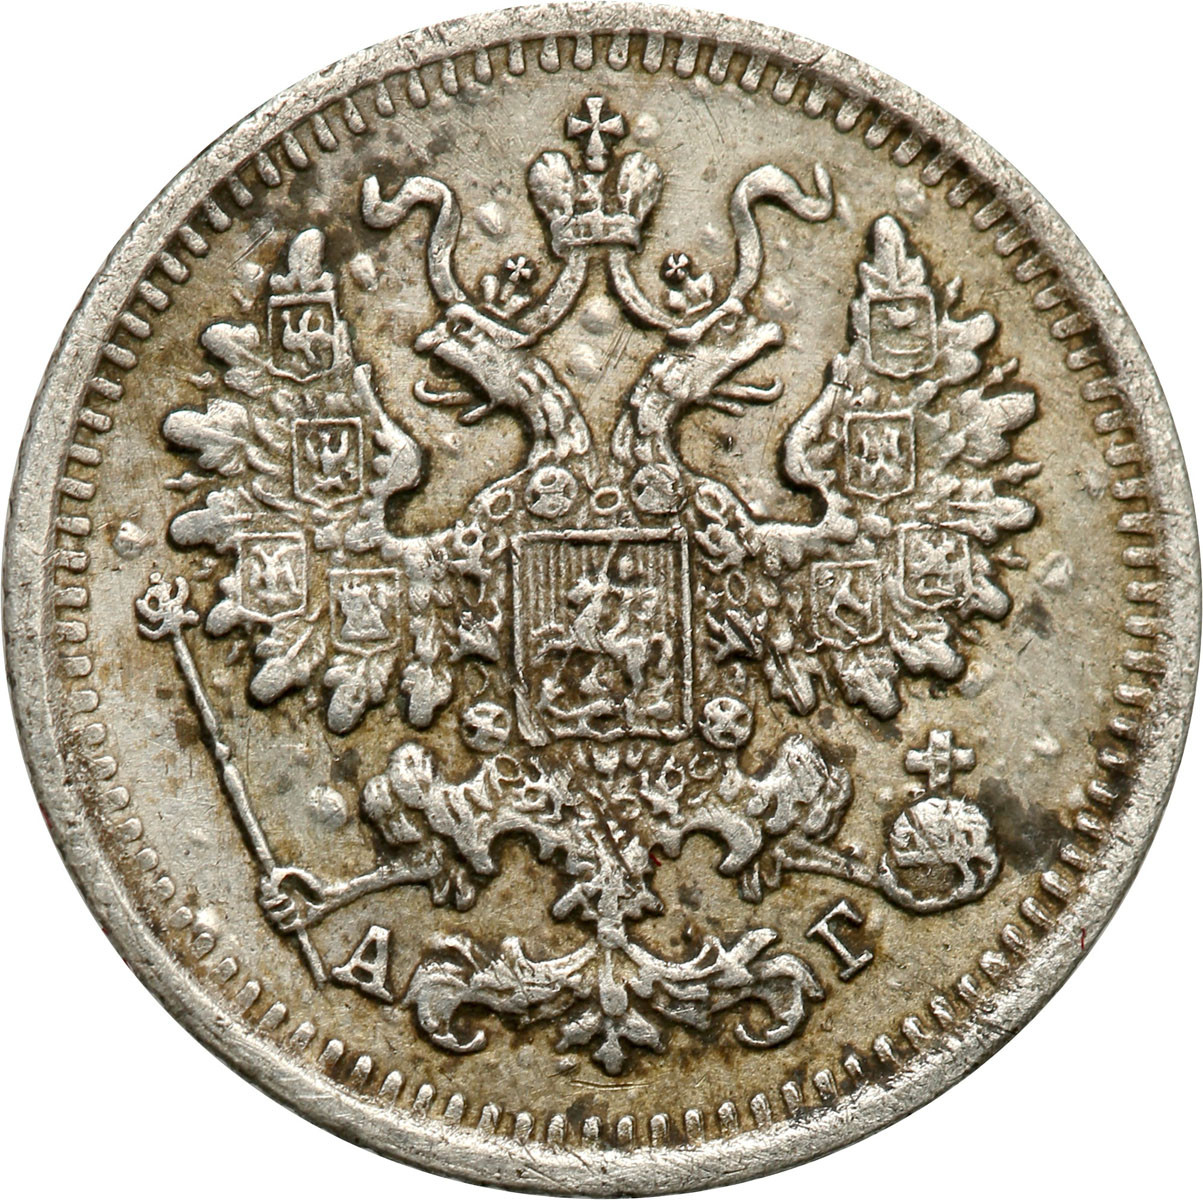 Rosja. Aleksander III. 5 kopiejek 1890 СПБ-АГ, Petersburg